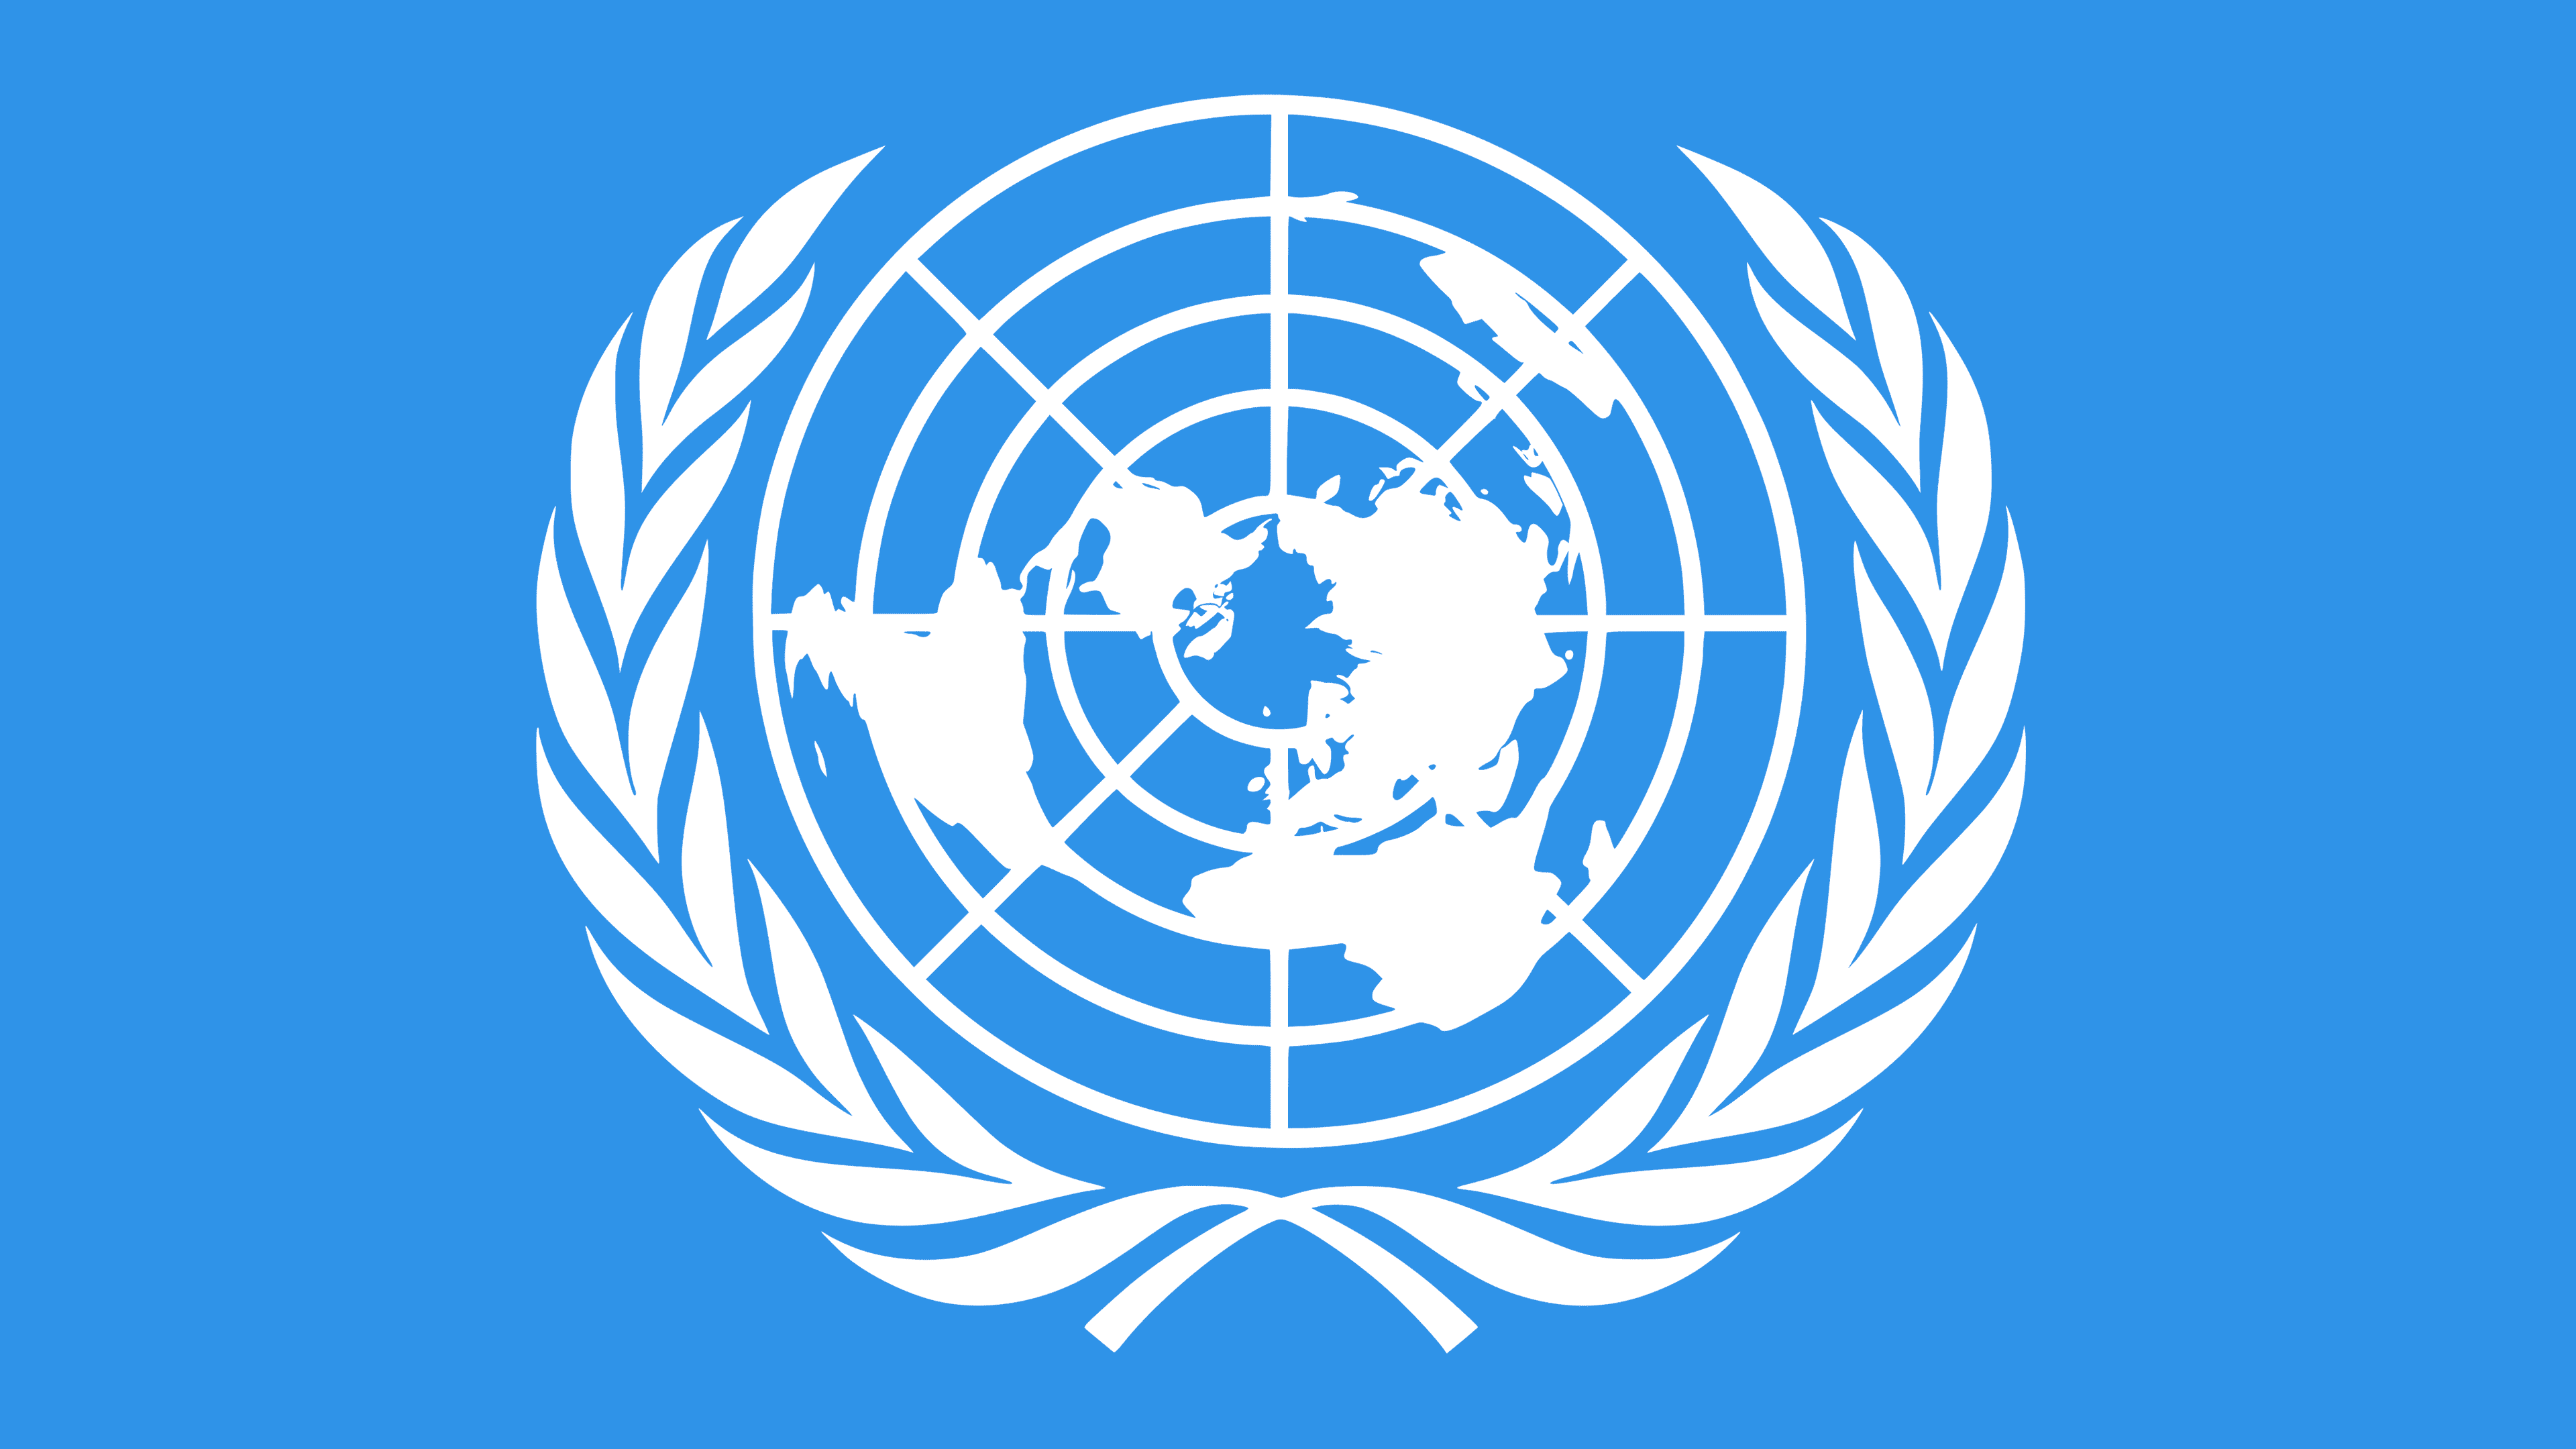 Заява Координаторки системи ООН в Україні, Гуманітарної координаторки Оснат Лубрані від імені Організації Об’єднаних Націй в Україні